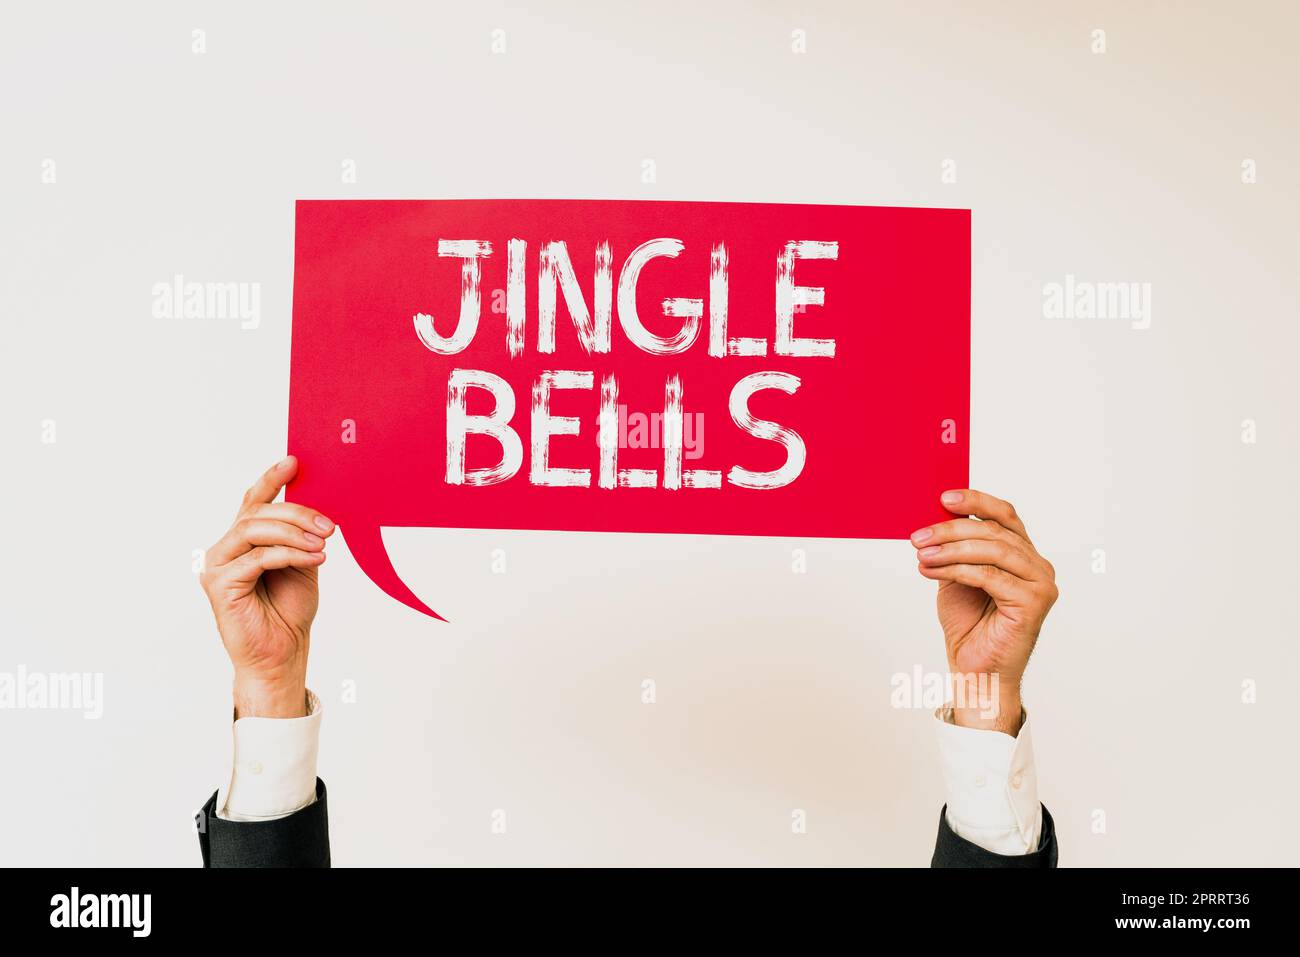 7000: Jingle Bells